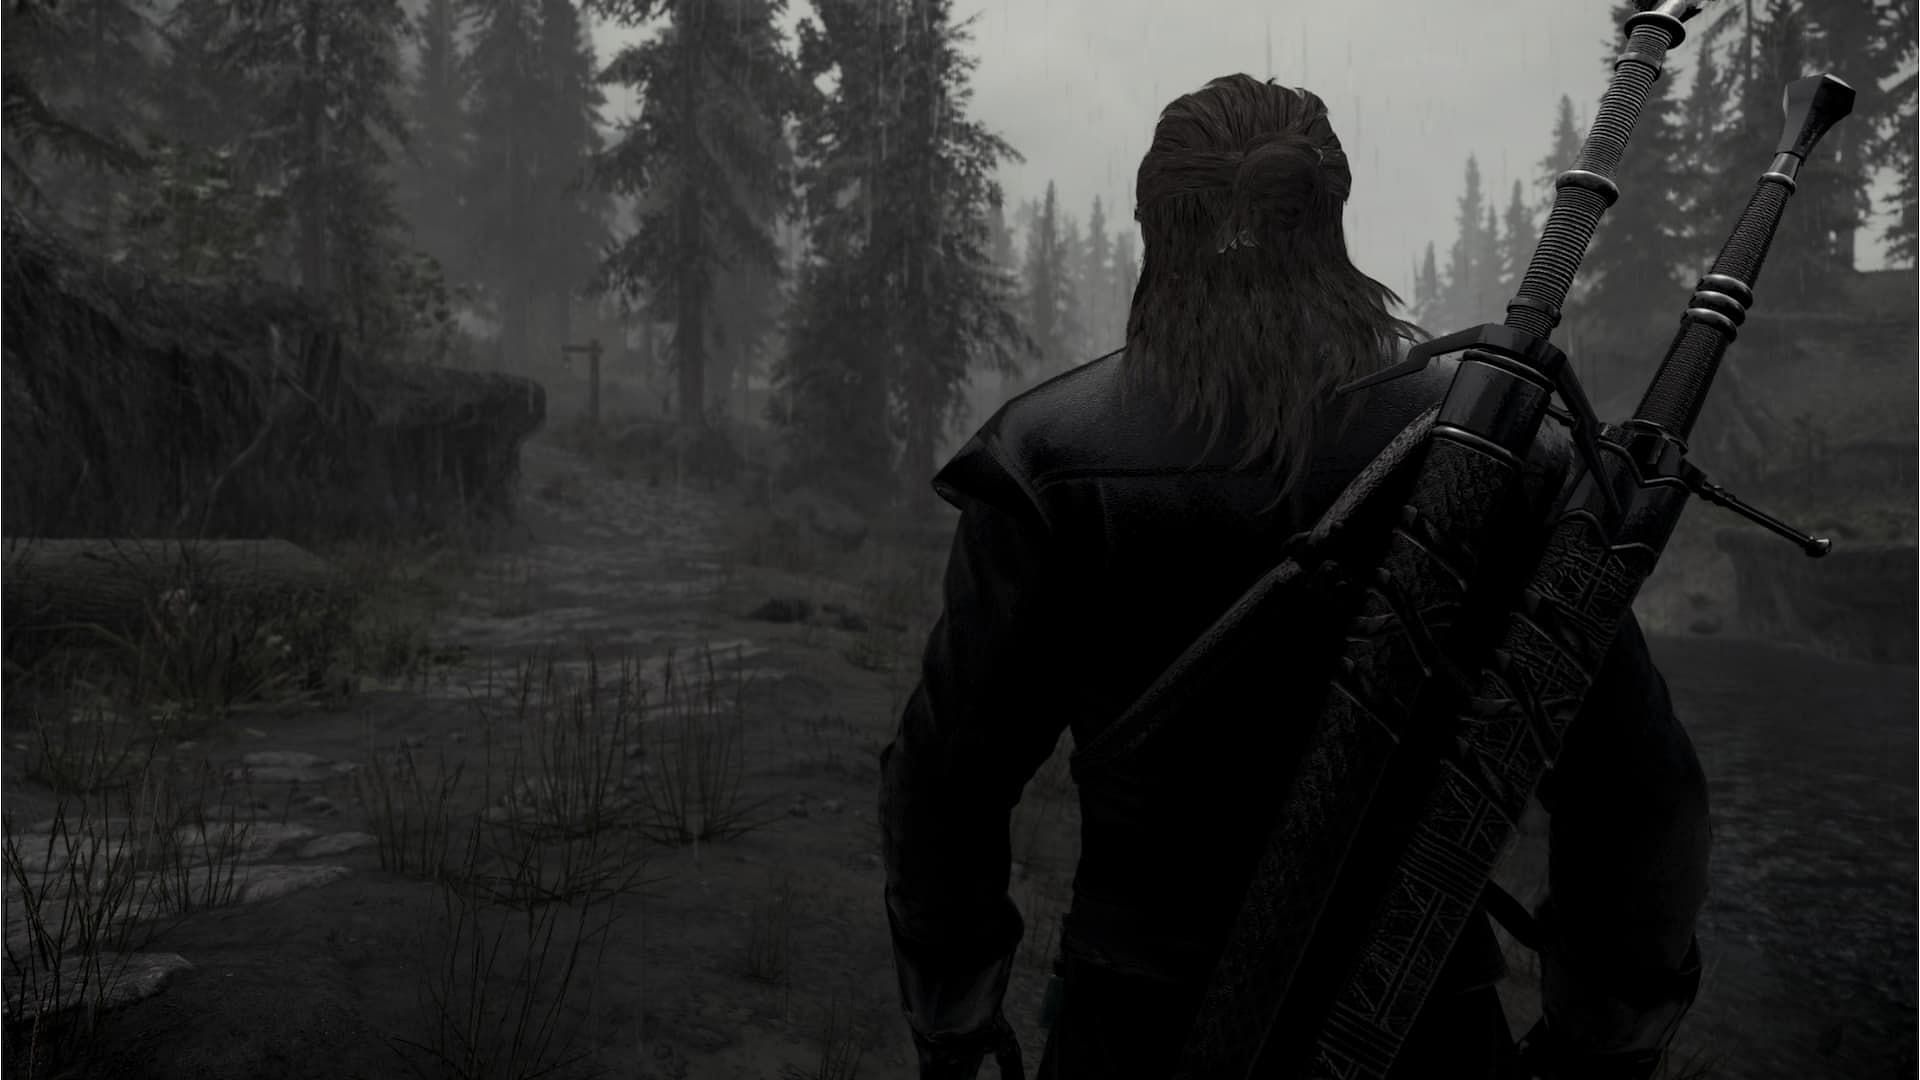 Witcher 3 Geralt dual swords Skyrim mods (Image via Nexus Mods website)